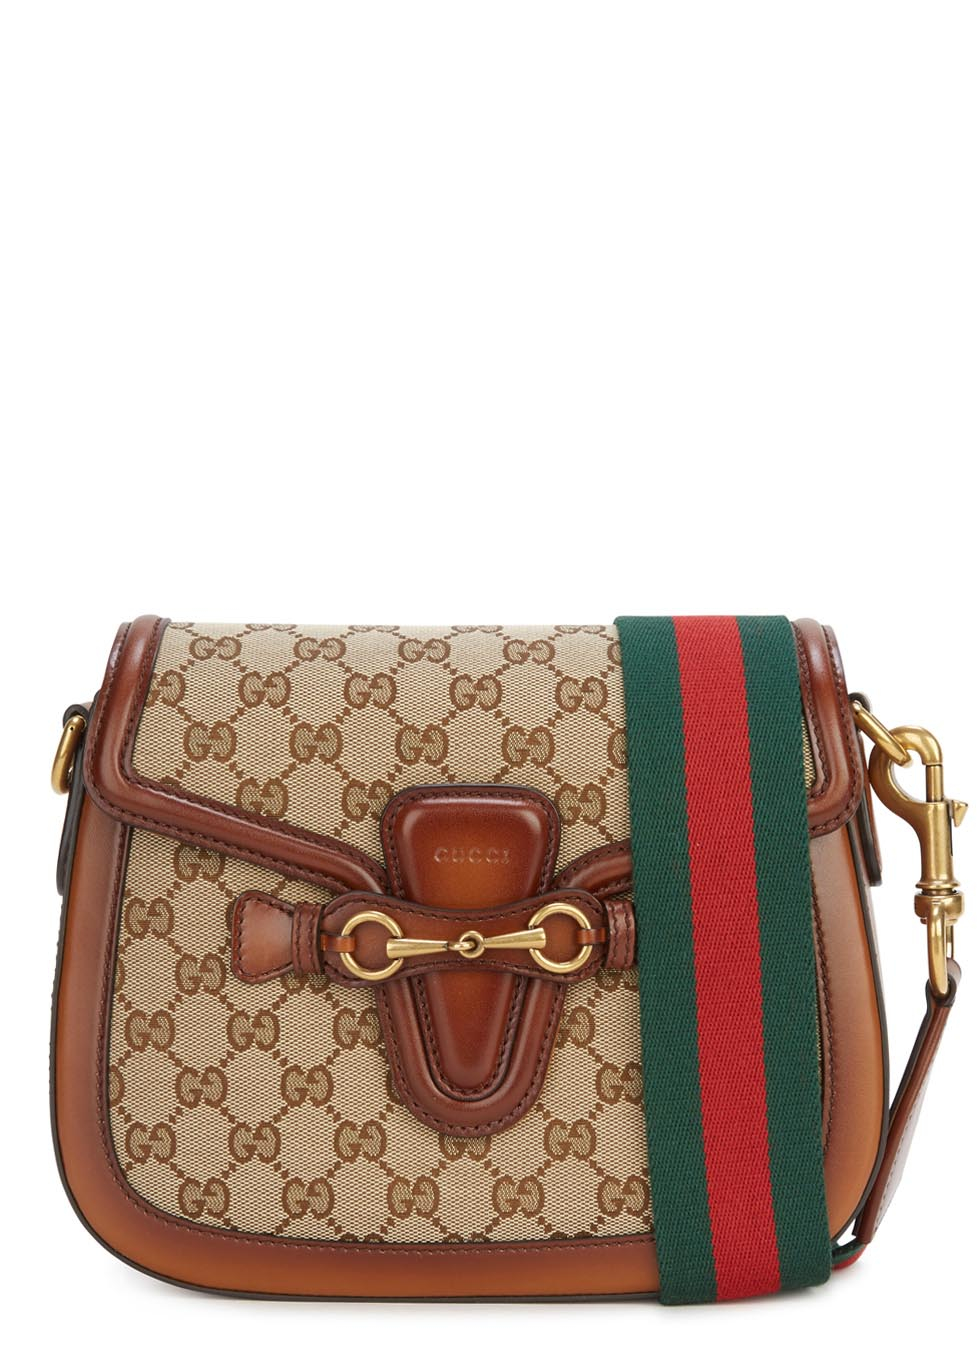 Lyst - Gucci Lady Web Medium Cross-body Bag in Brown